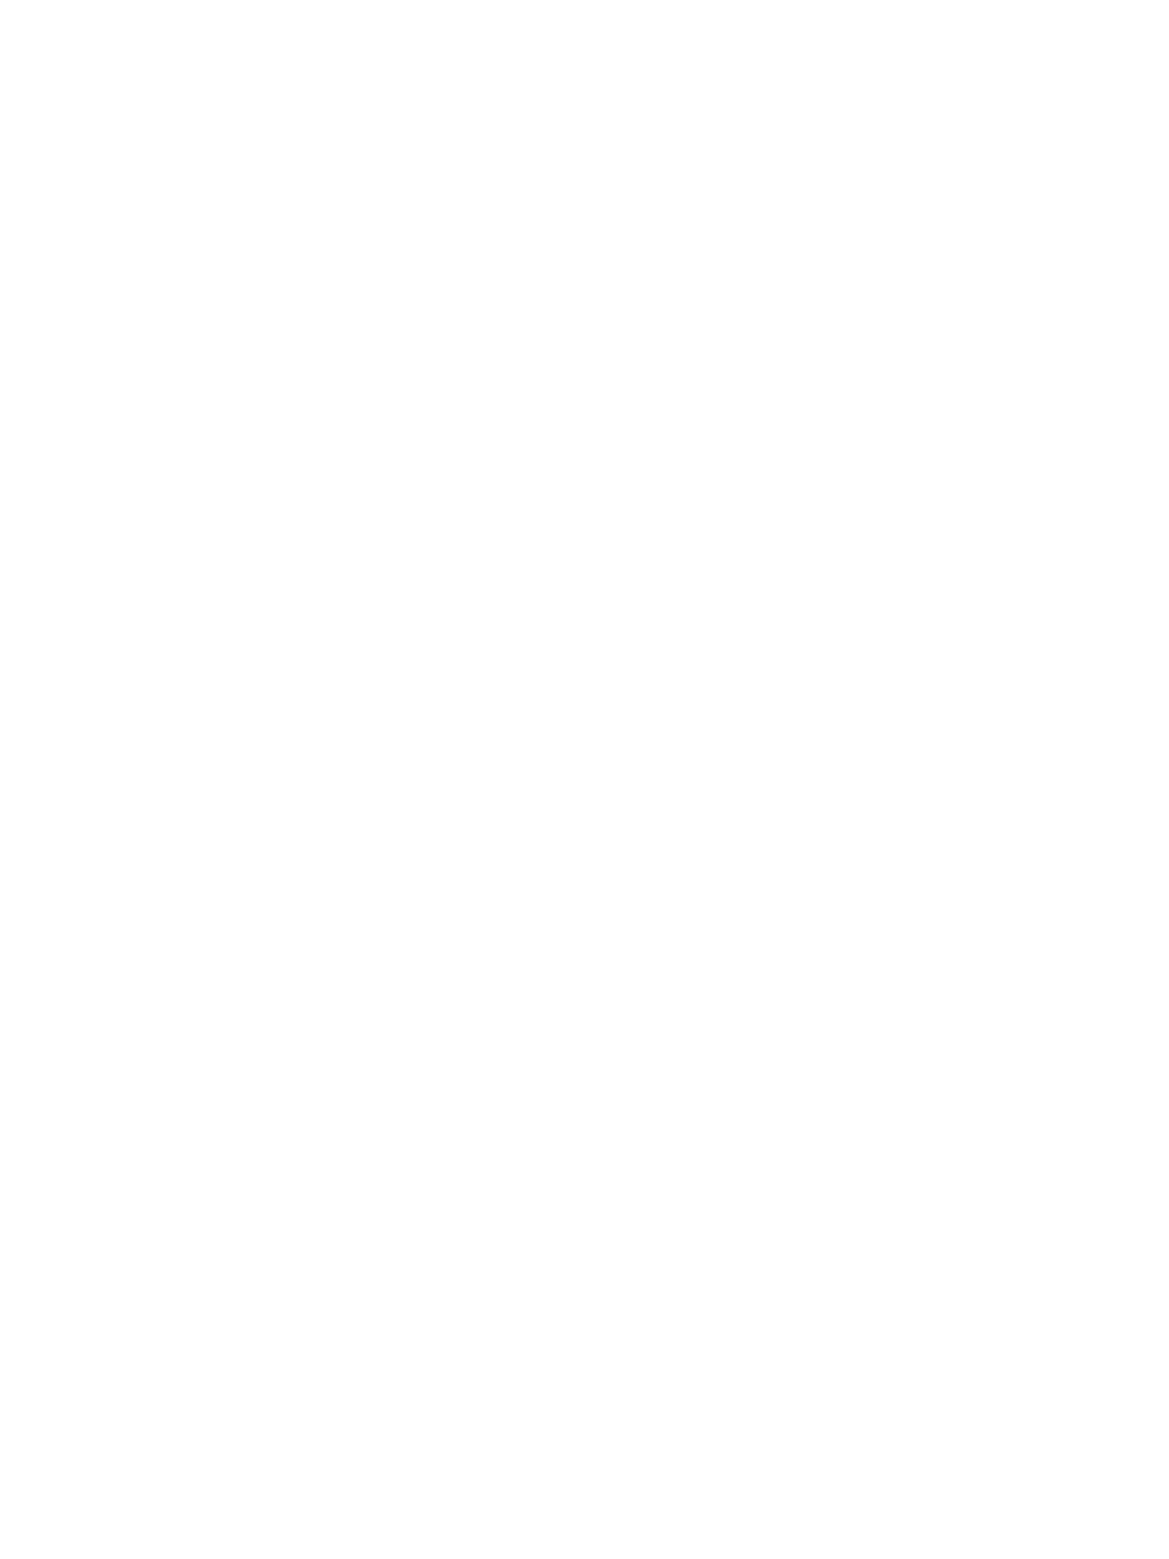 Siemens logo pour fonds sombres (PNG transparent)